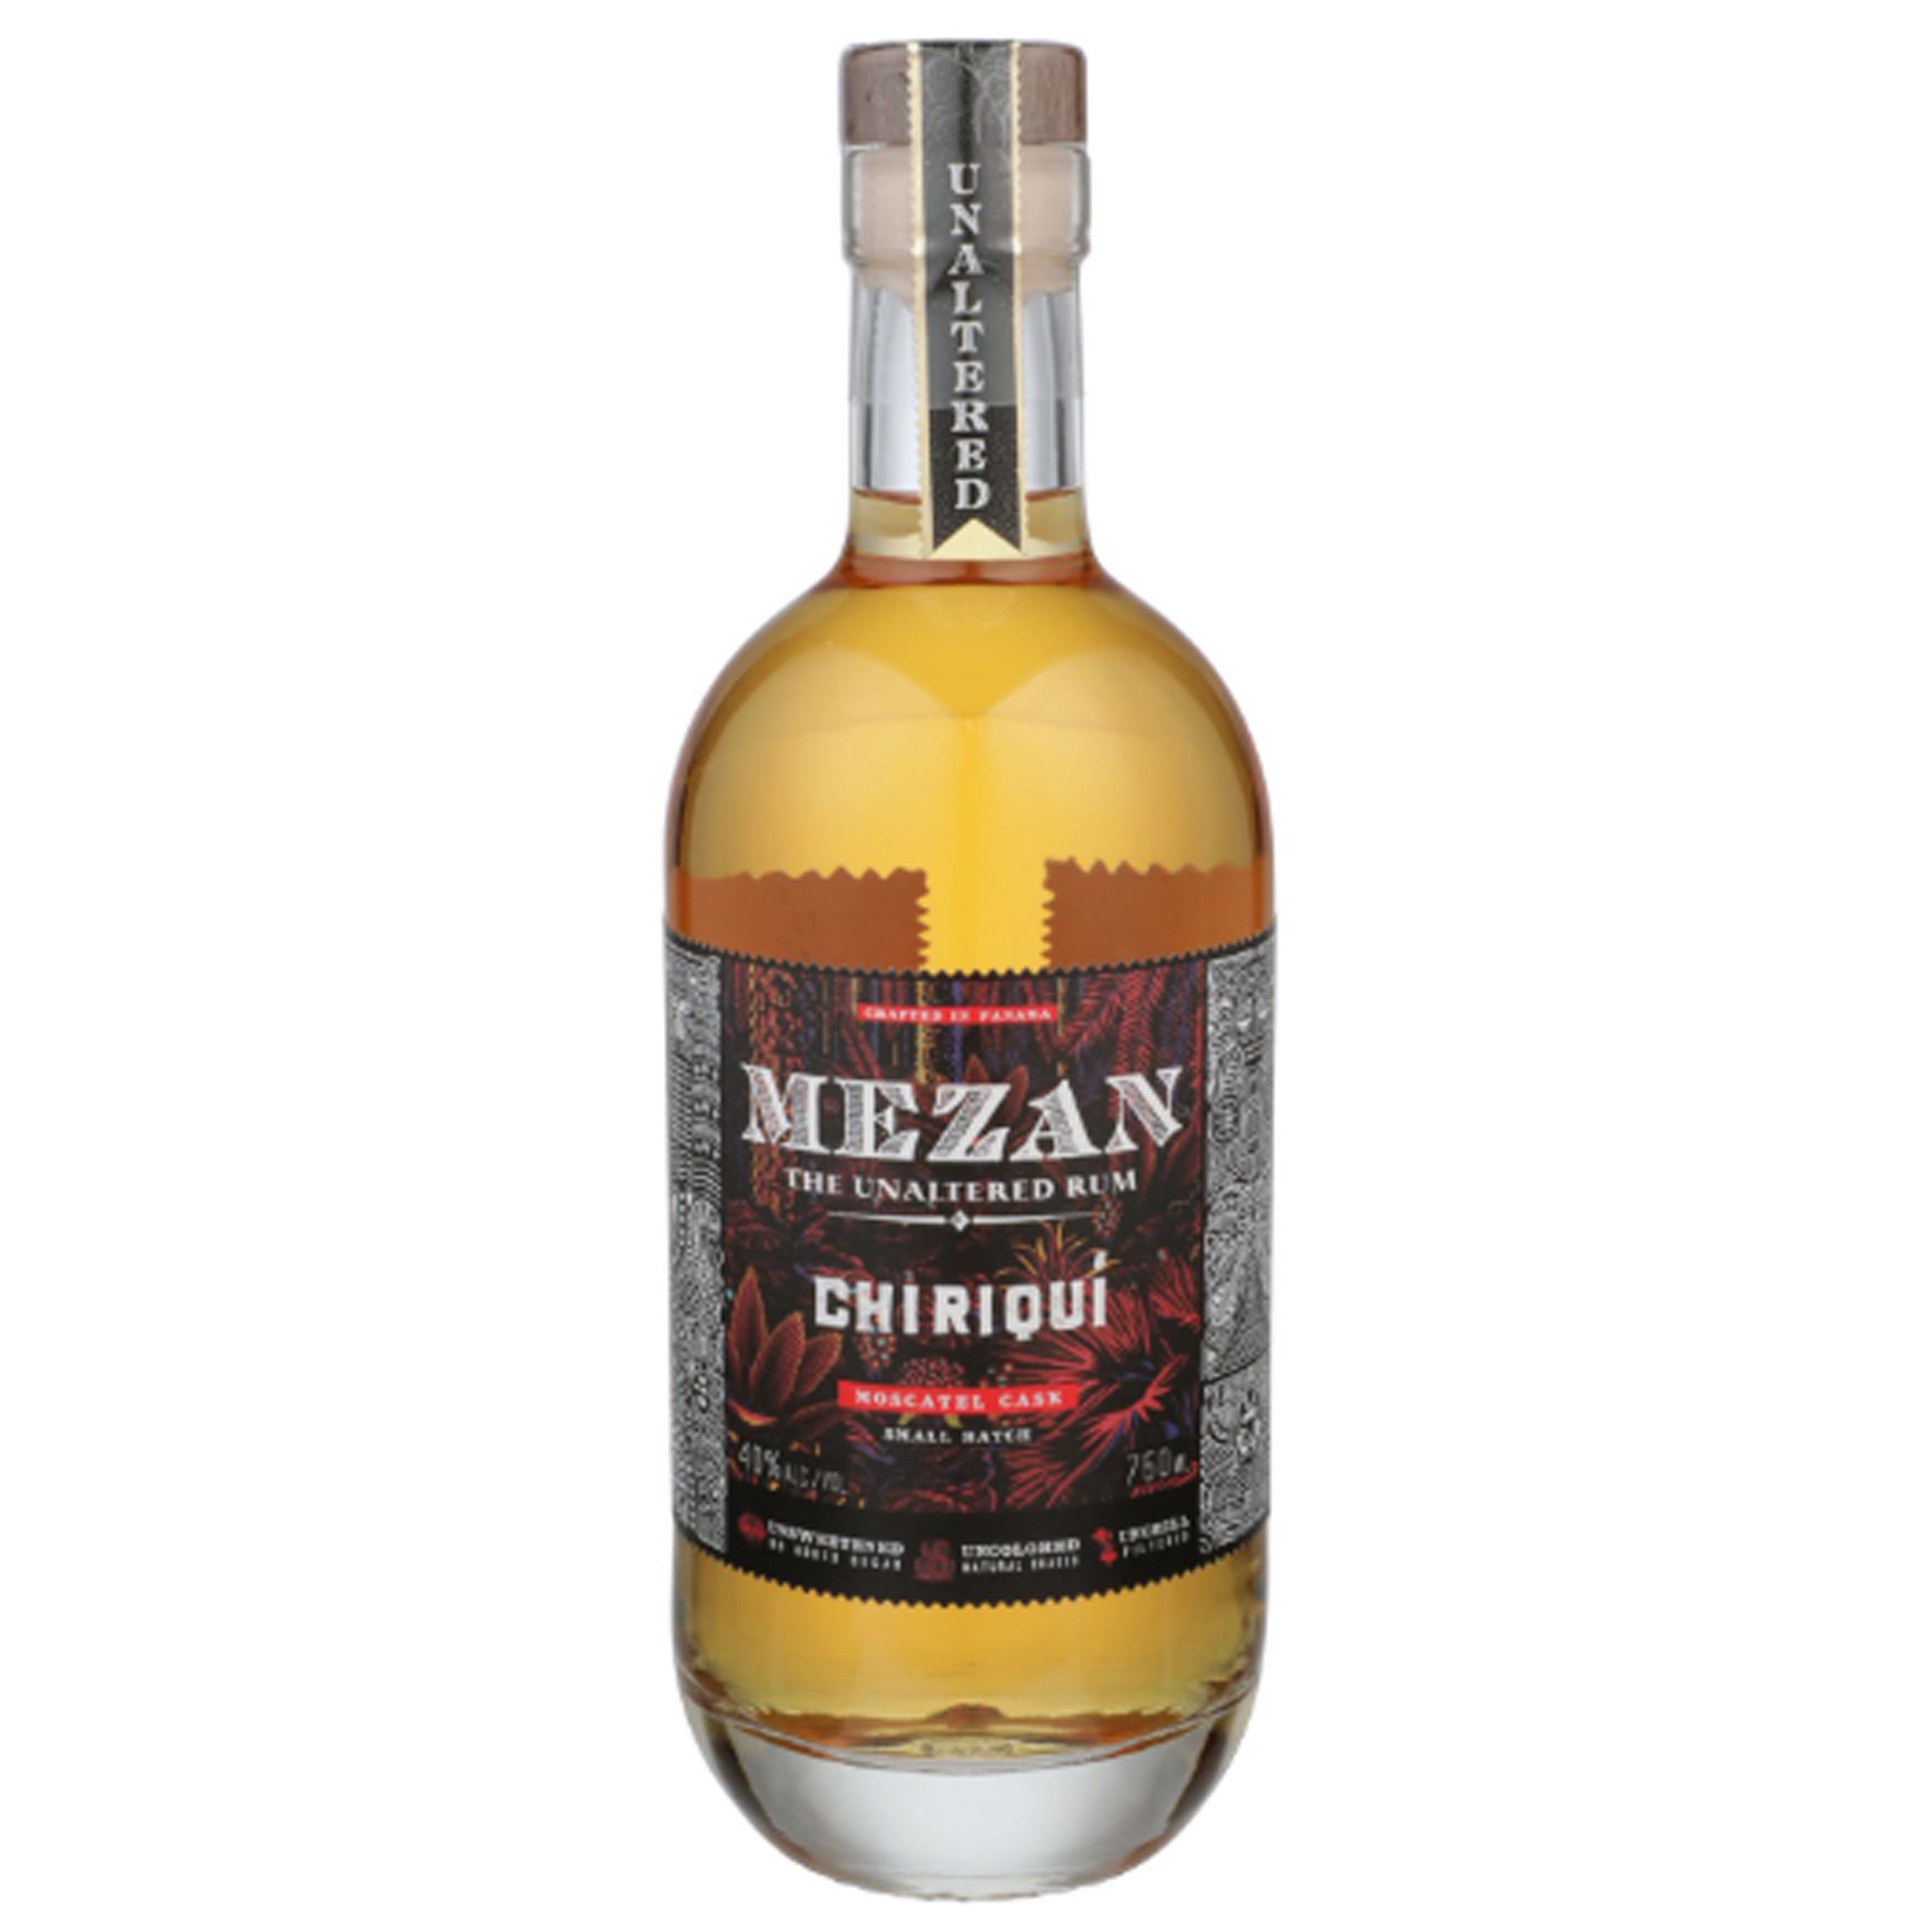 Mezan Chiriquí Moscatel Cask Rum